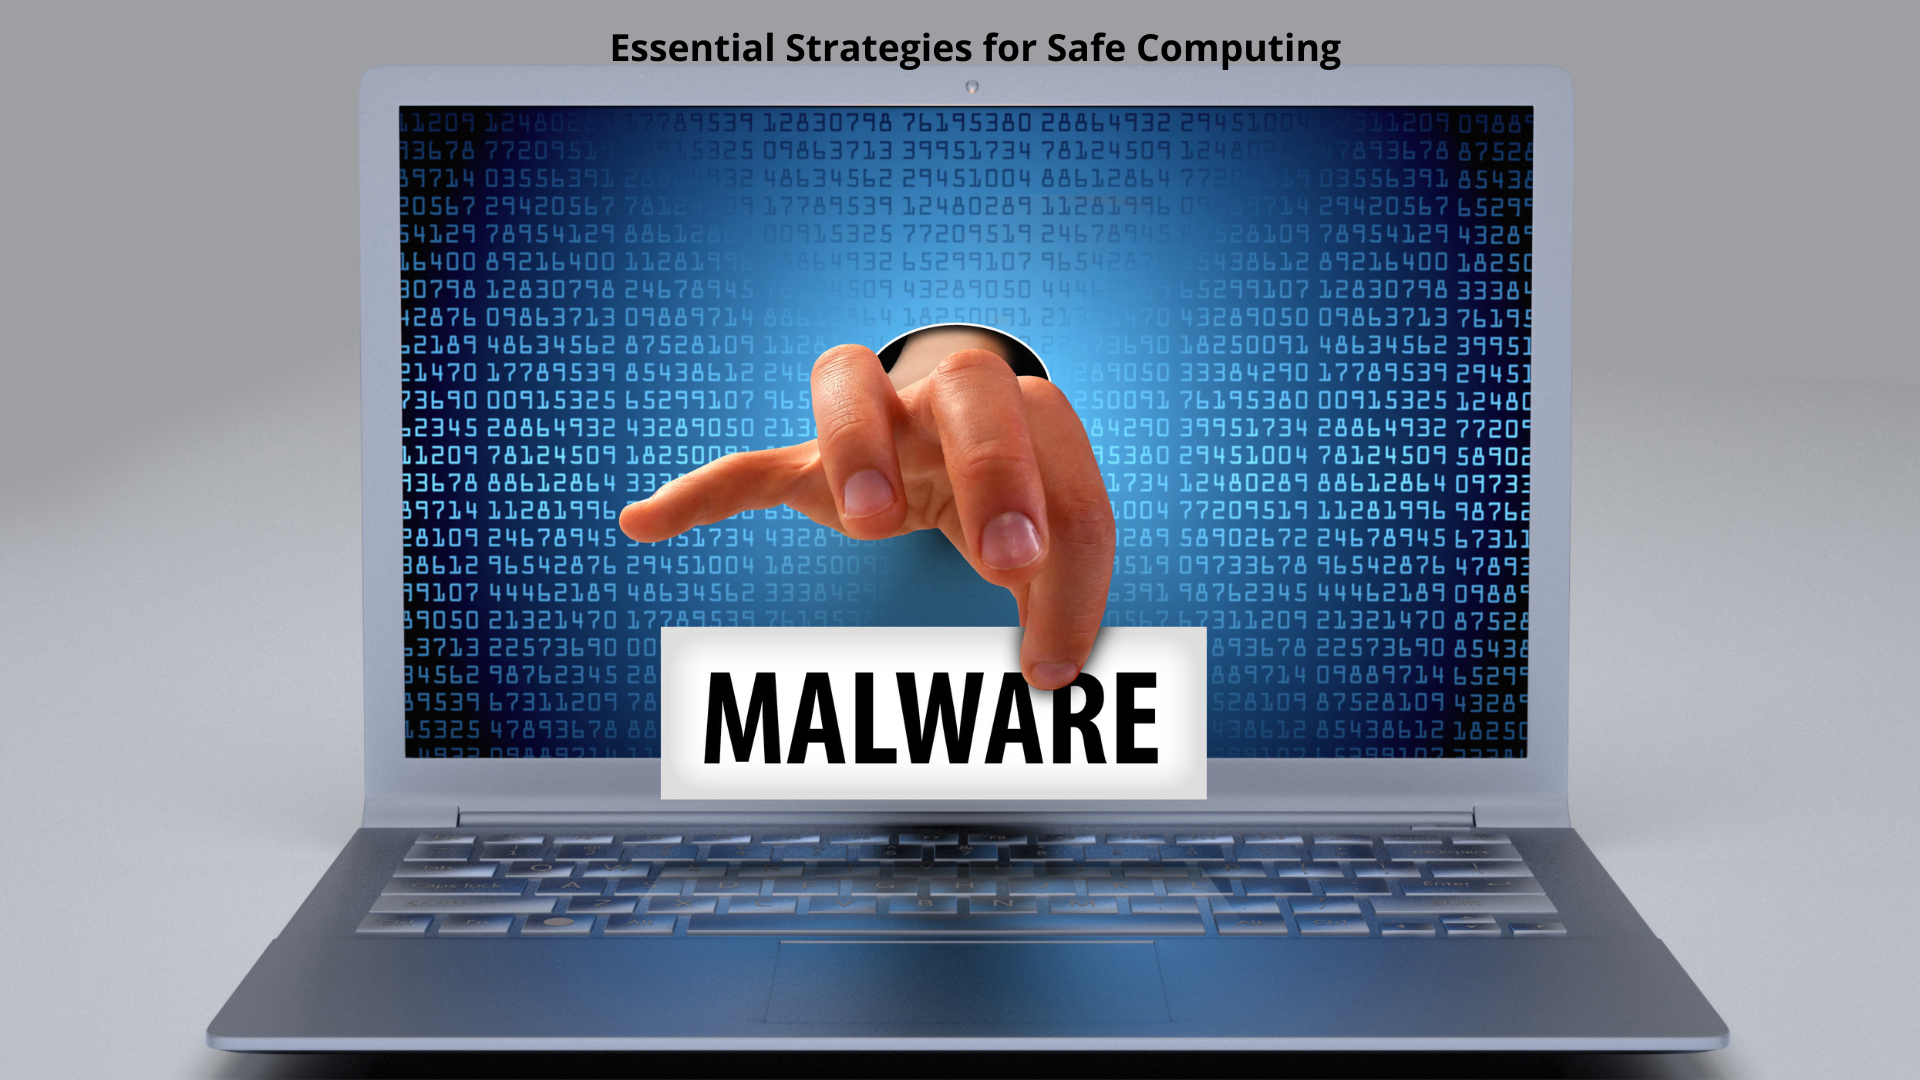 Malware Prevention Guide